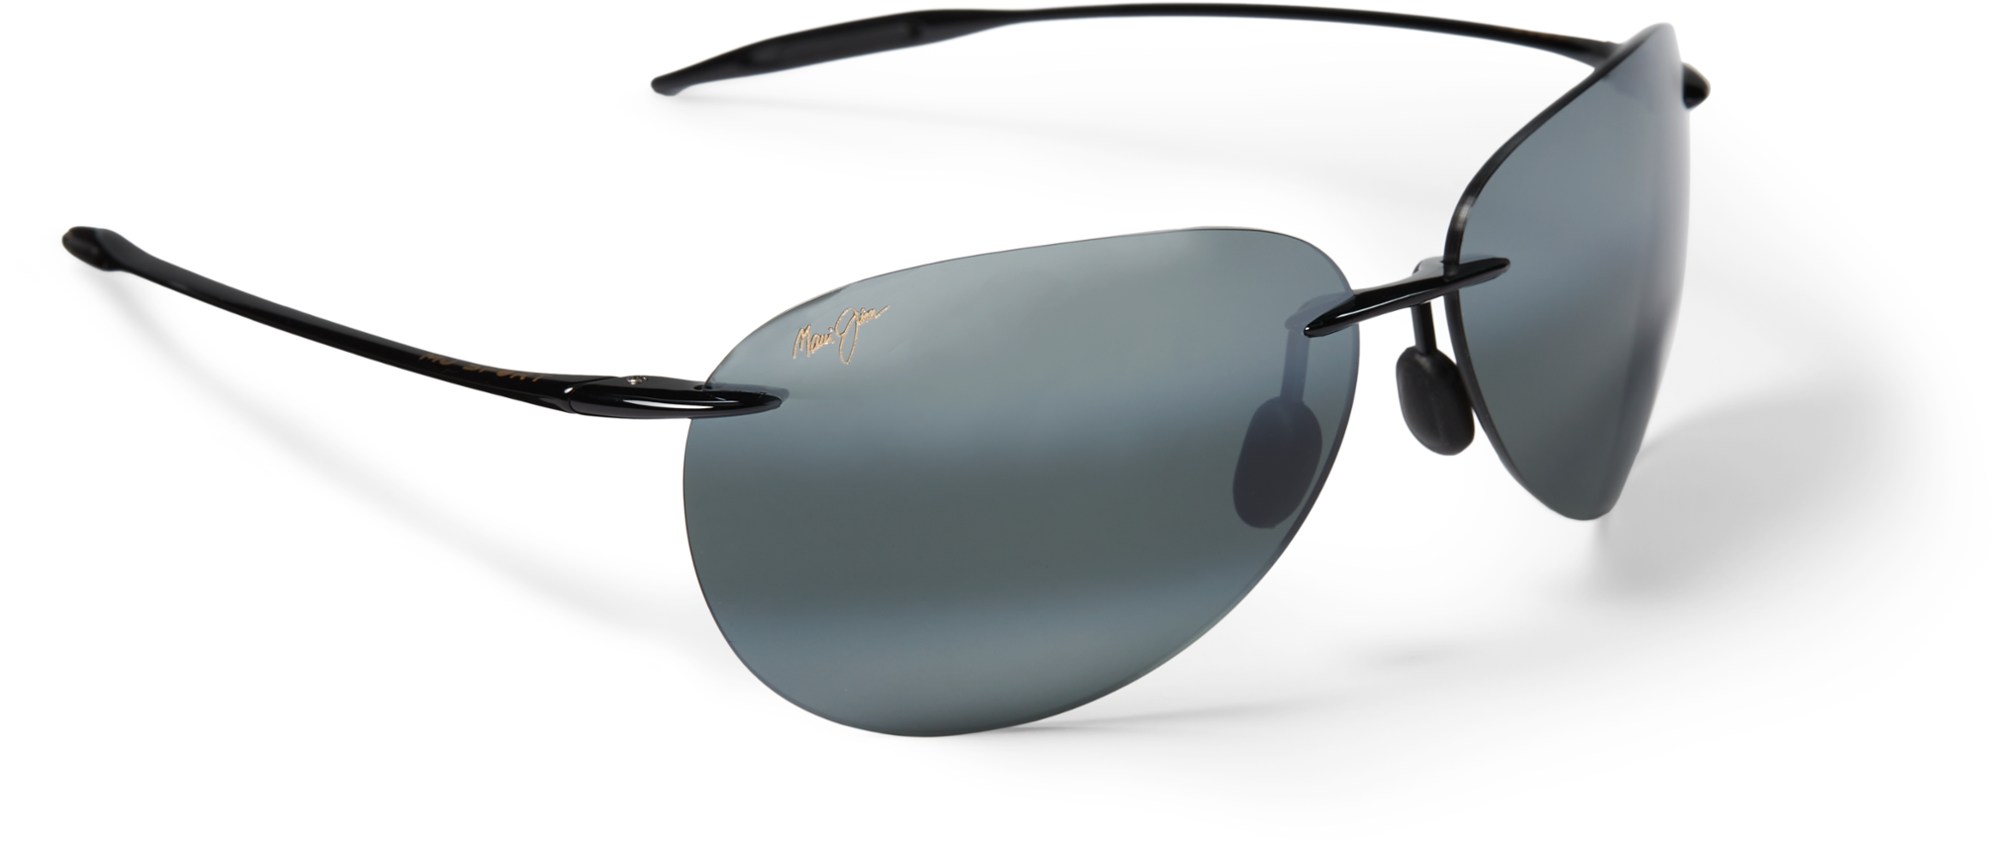 Поляризованные солнцезащитные очки Sugar Beach Maui Jim, черный солнцезащитные очки fedrov авиаторы оправа металл поляризационные черный